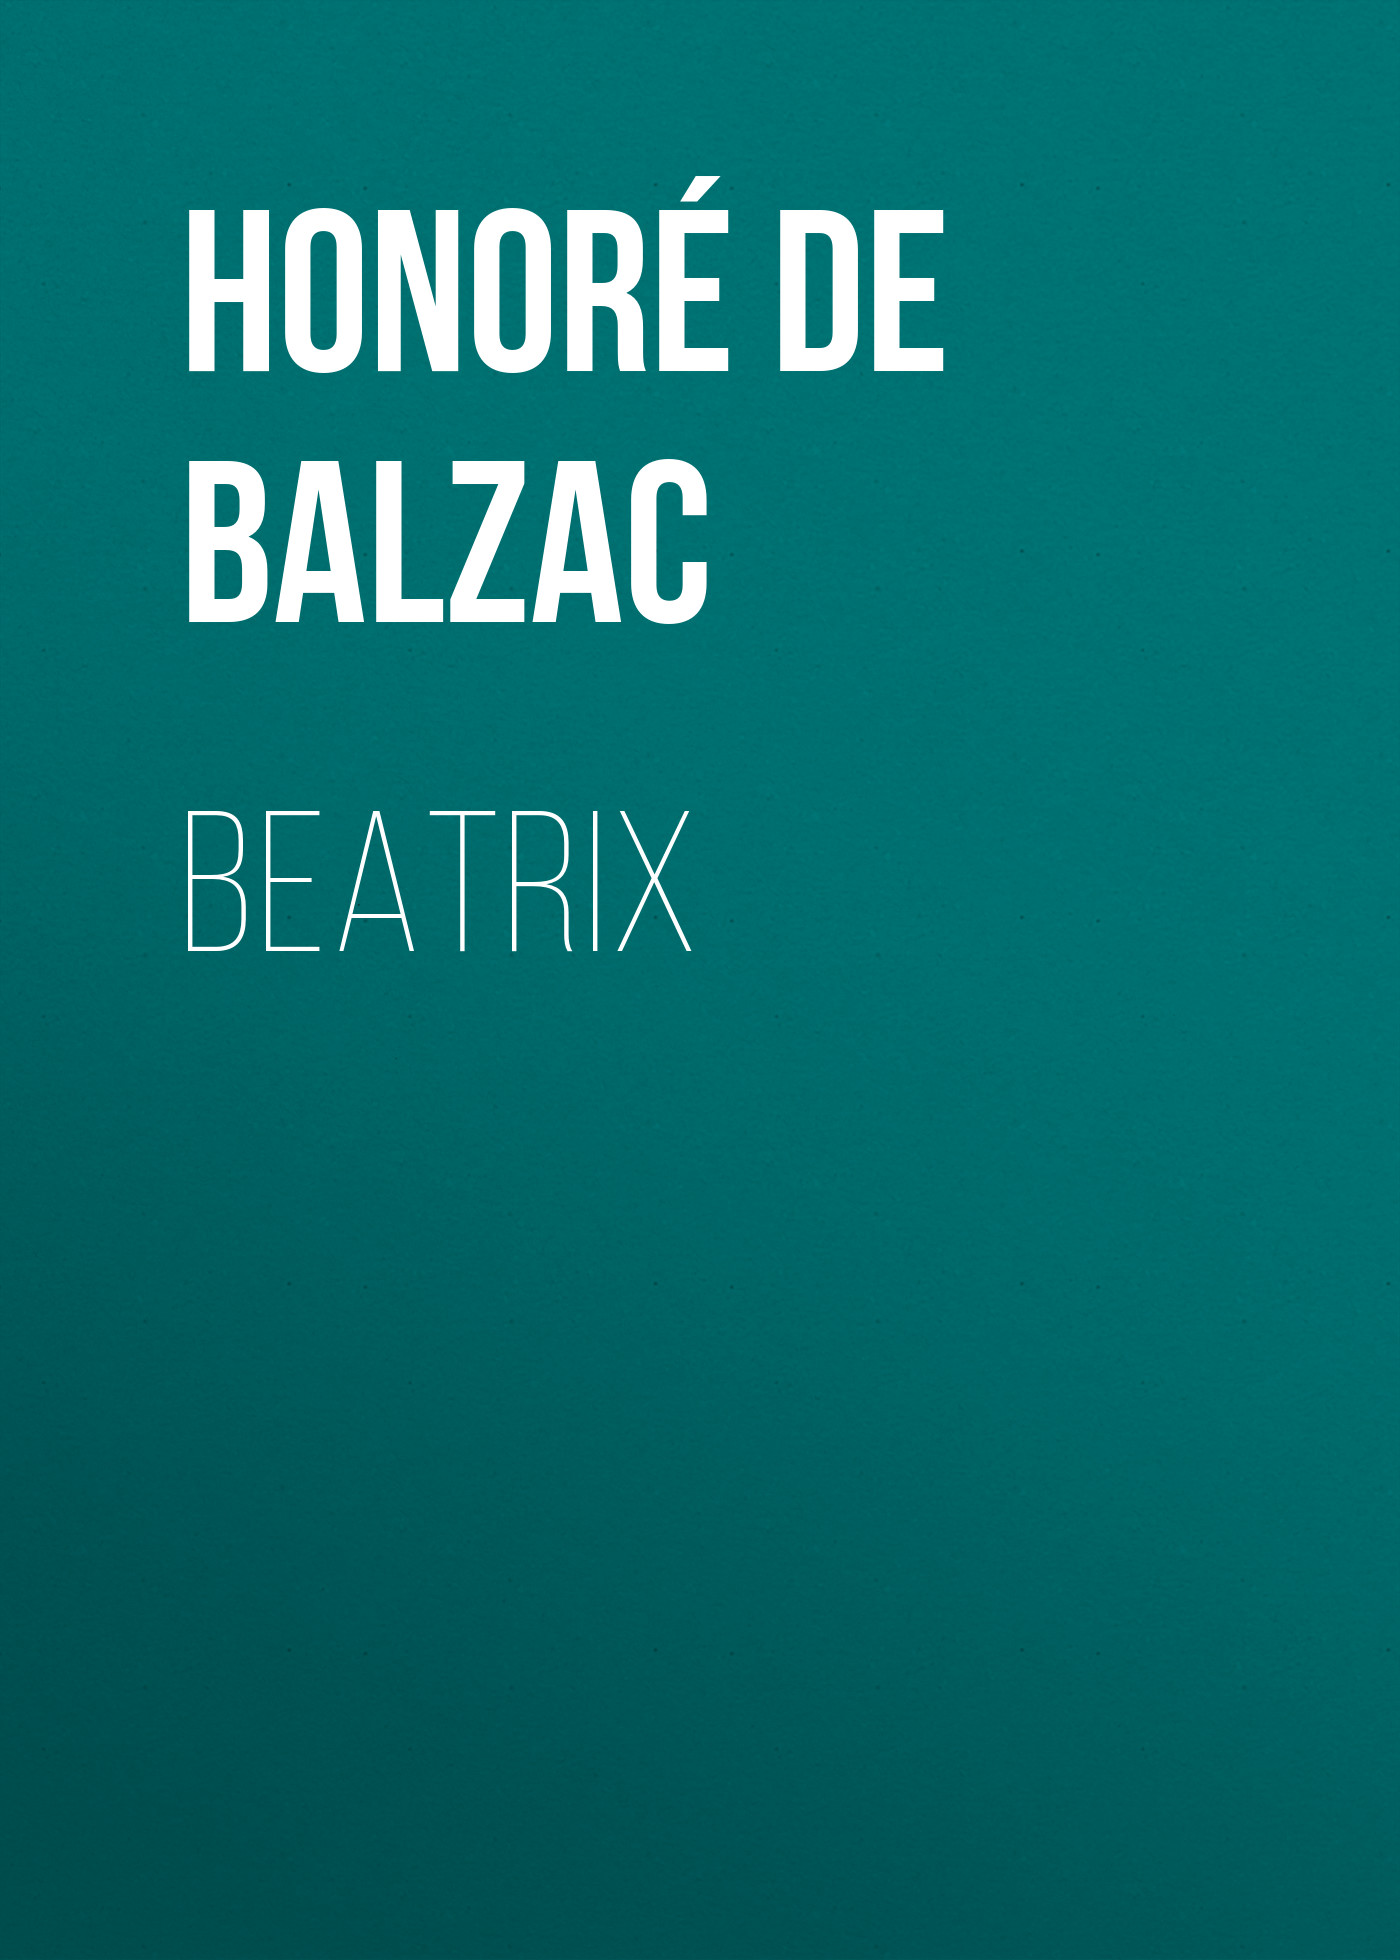 Книга Beatrix из серии , созданная Honoré Balzac, может относится к жанру Литература 19 века, Зарубежная старинная литература, Зарубежная классика. Стоимость электронной книги Beatrix с идентификатором 25020987 составляет 0 руб.